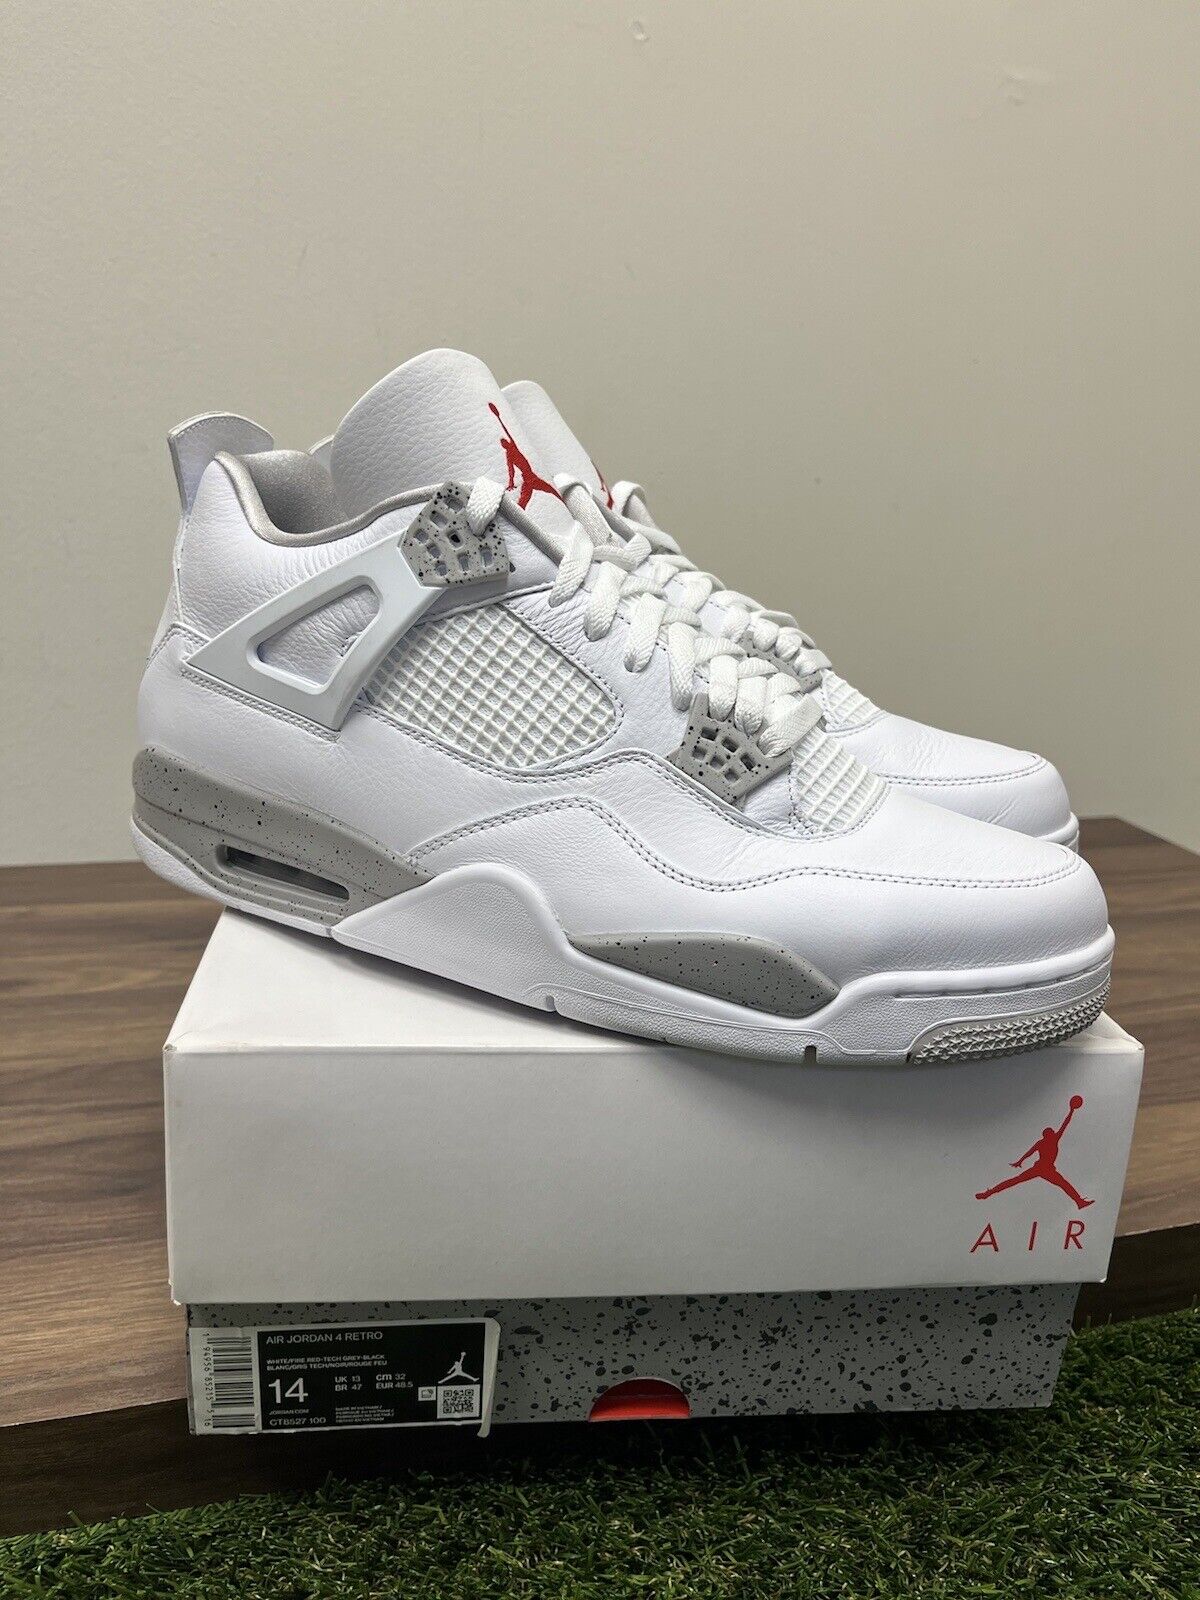 Nike Air Jordan 4 Retro White Oreo Size 14 CT8527-100 OG IV Bred cement 